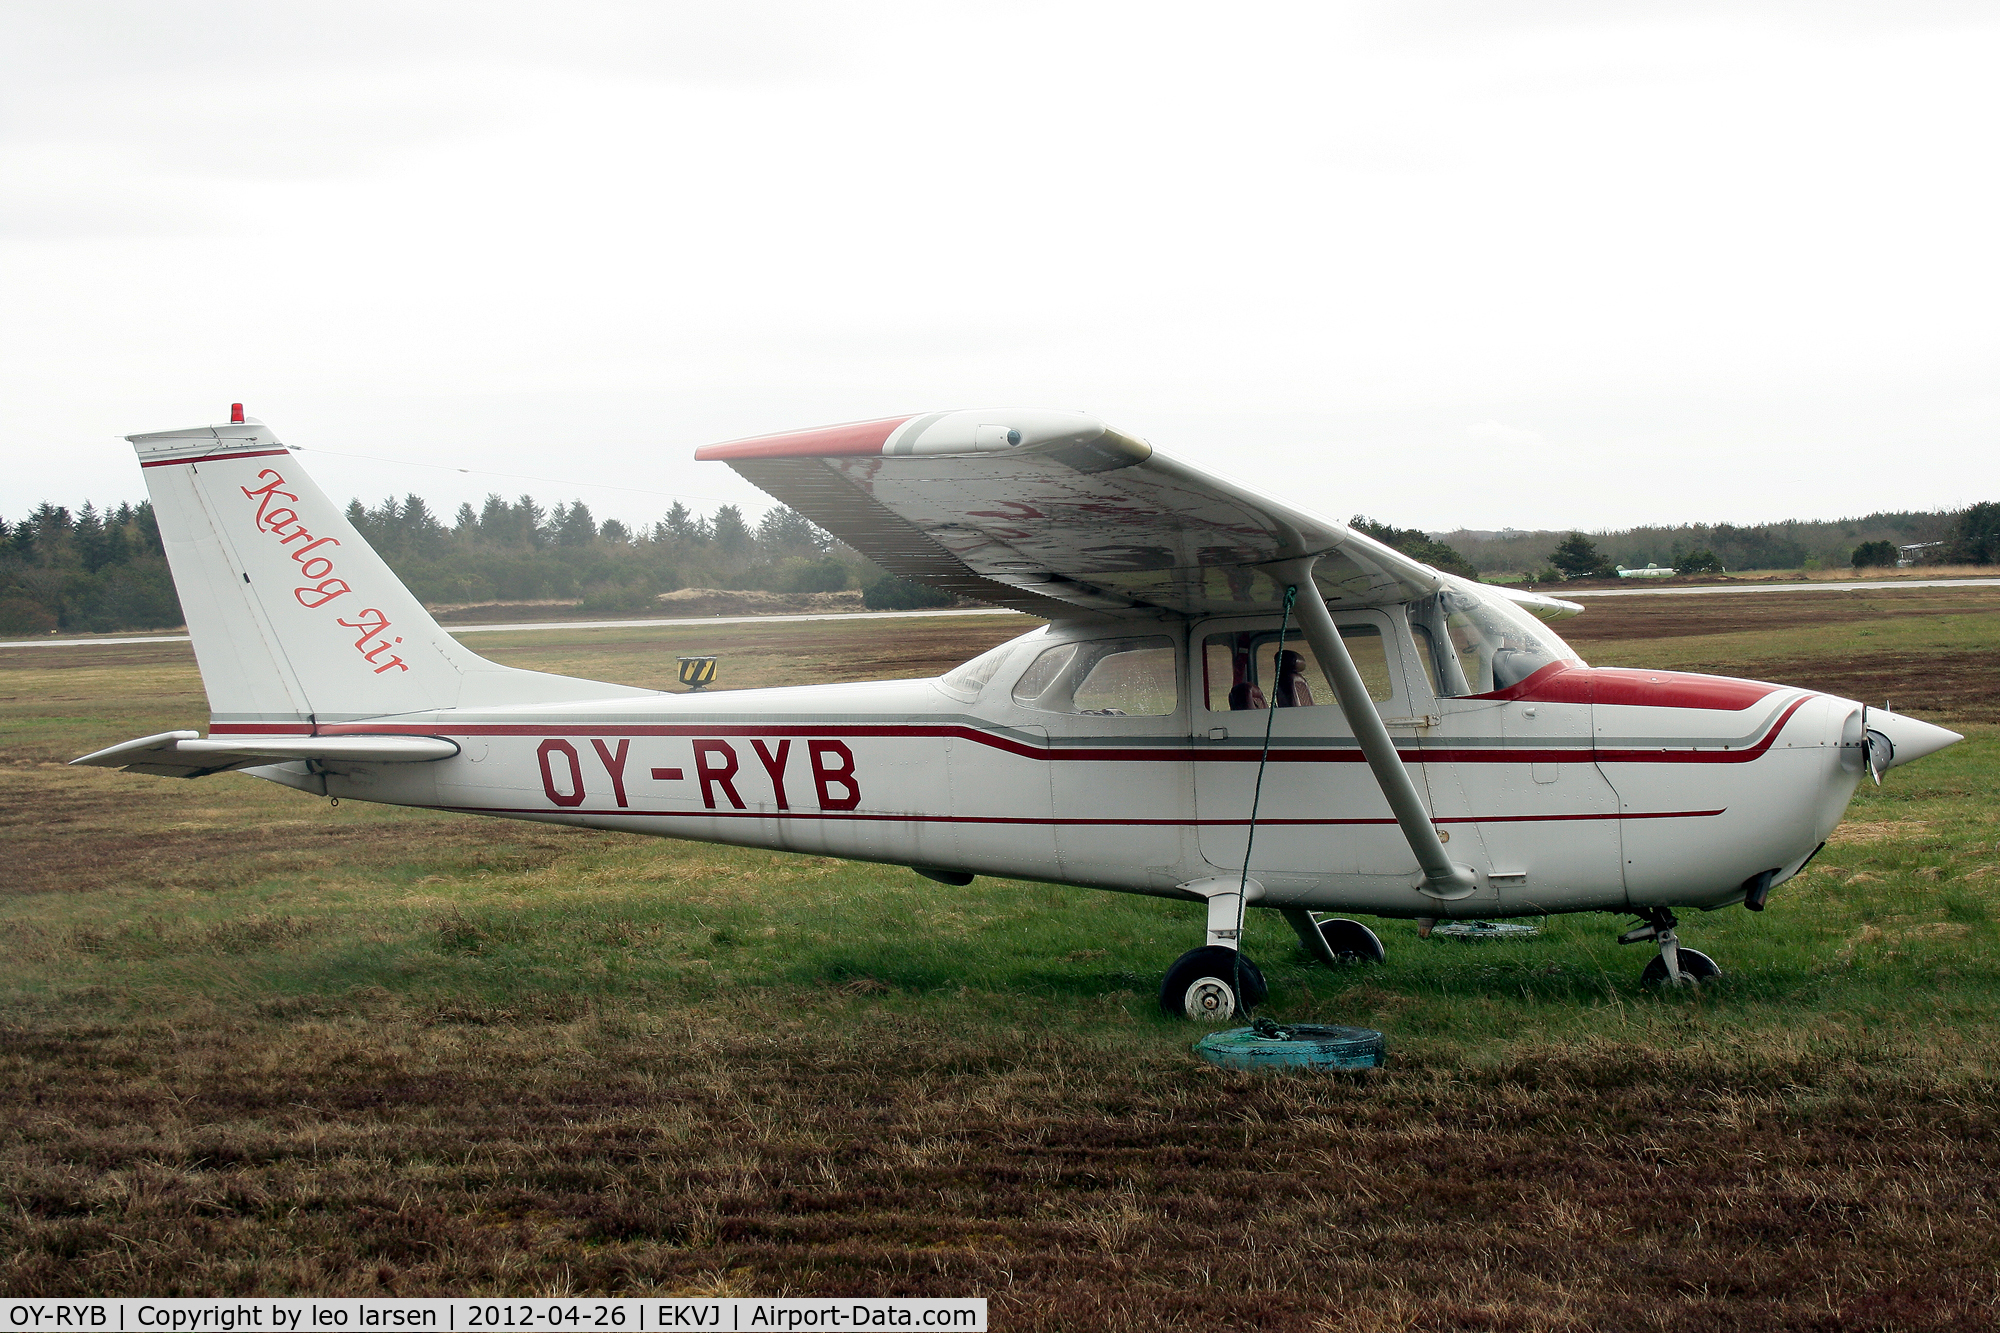 OY-RYB, 1972 Reims F172L Skyhawk C/N 862, Stauning 26.4.12 Denmark